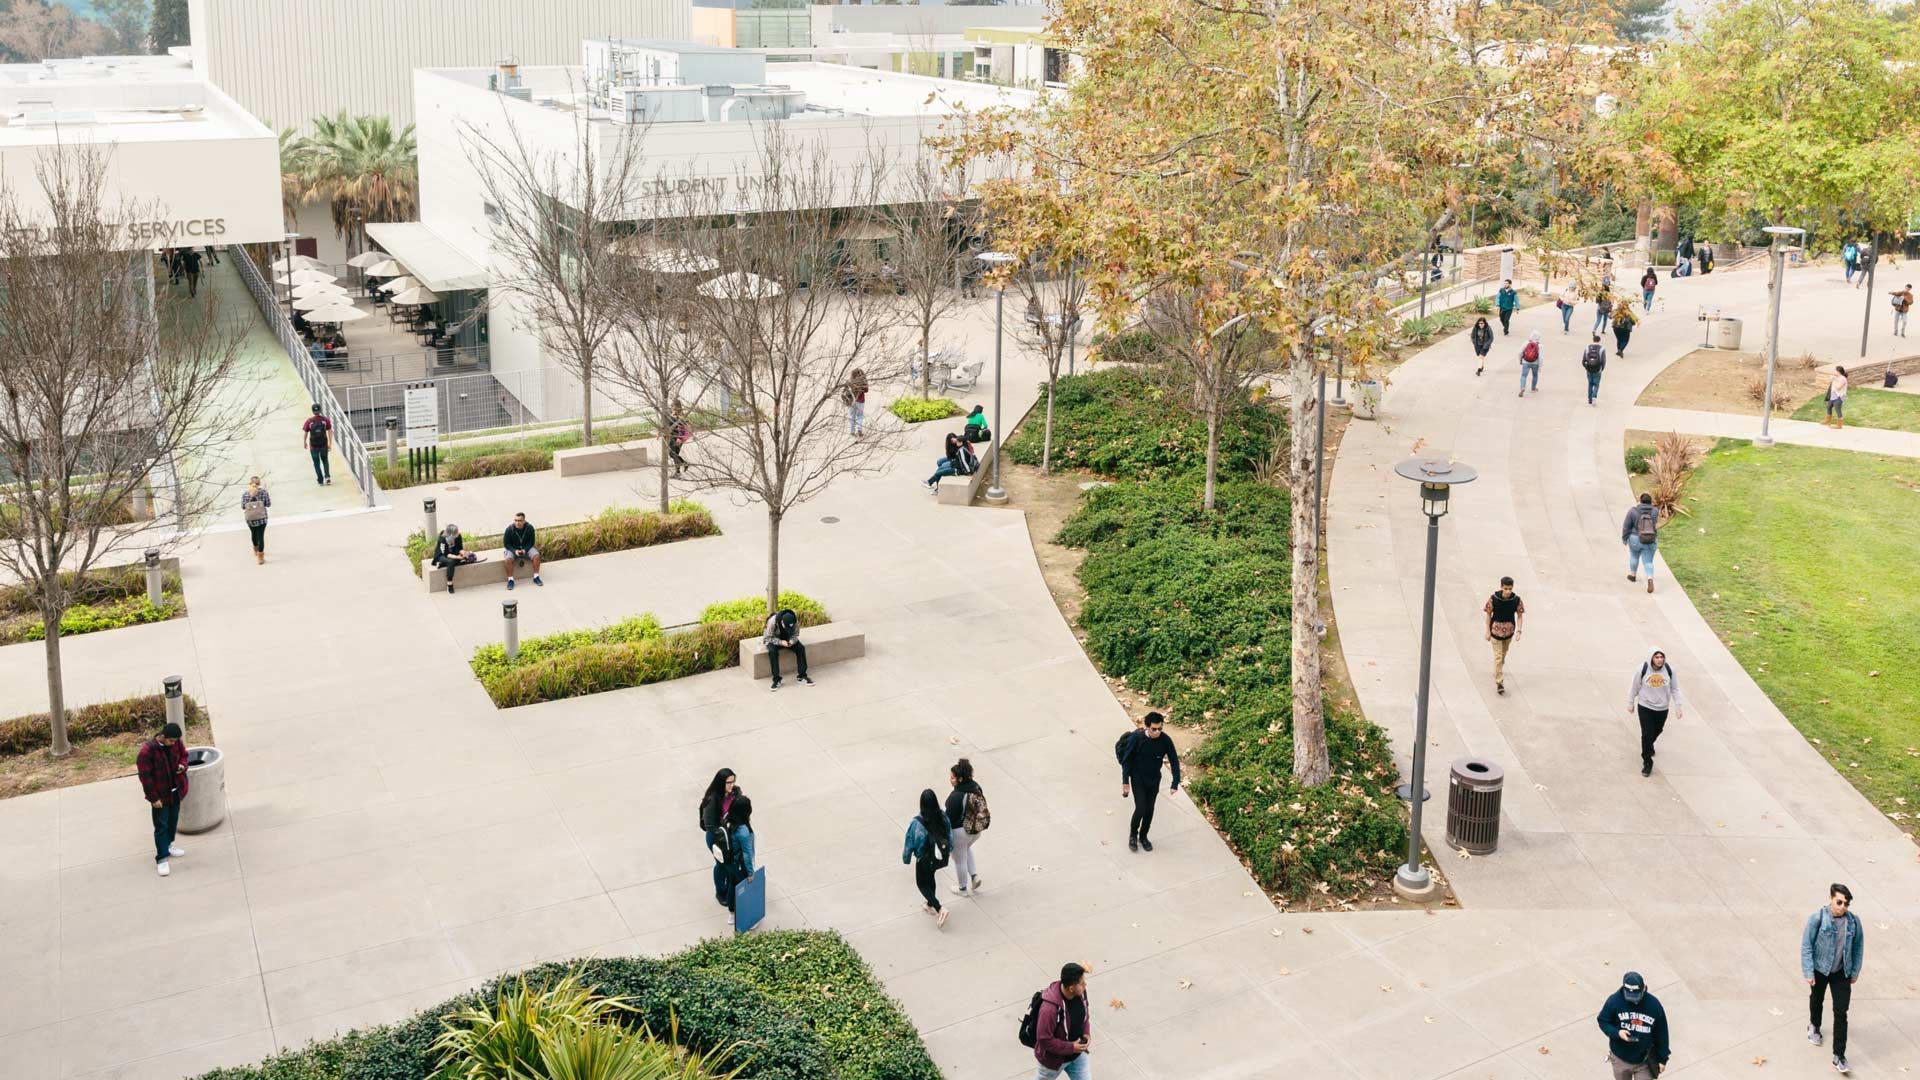 Campus universitario con espacios verdes y zonas peatonales llenas de estudiantes con mochilas